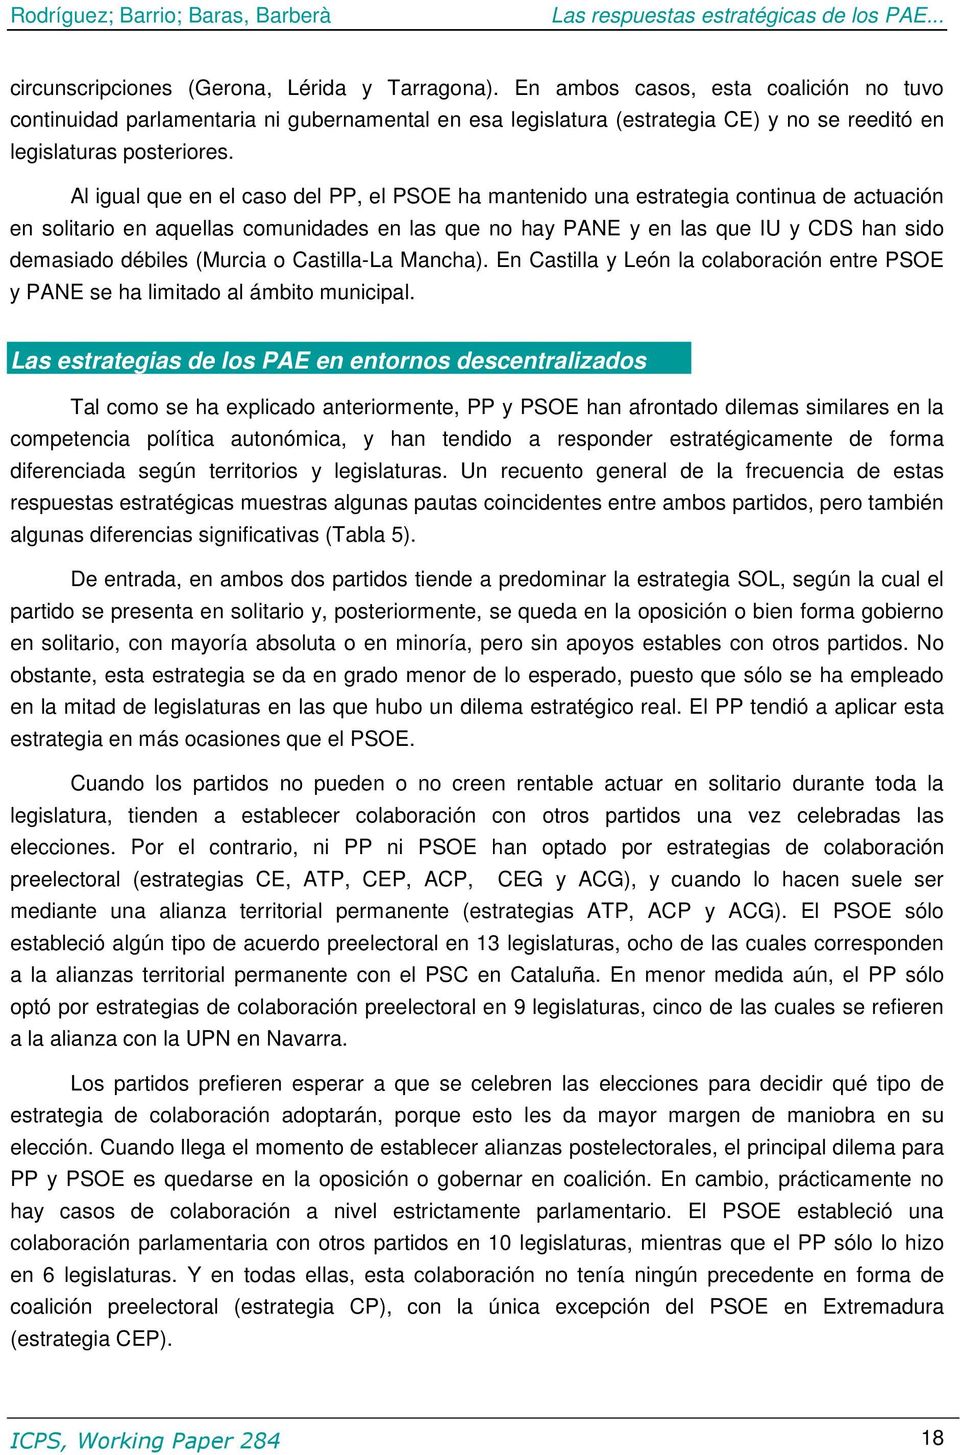 Al igual que en el caso del PP, el PSOE ha mantenido una estrategia continua de actuación en solitario en aquellas comunidades en las que no hay PANE y en las que IU y CDS han sido demasiado débiles